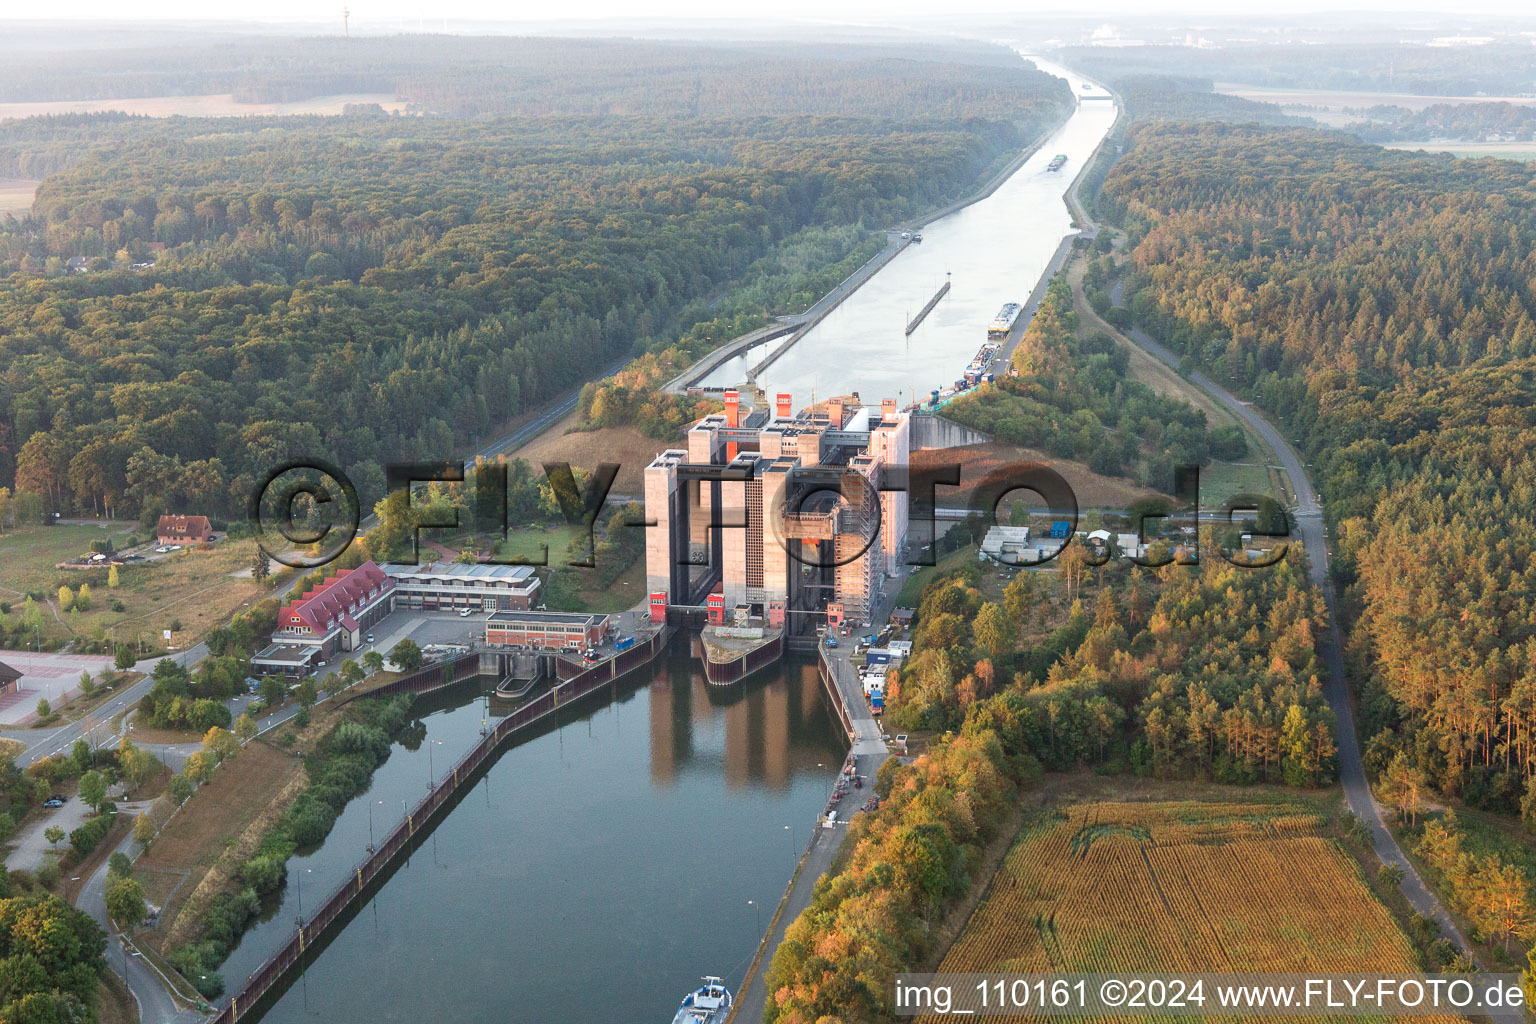 Systèmes d'ascenseurs à bateaux et d'écluses sur les rives du canal latéral à l'Elbe à Scharnebeck dans le département Basse-Saxe, Allemagne hors des airs